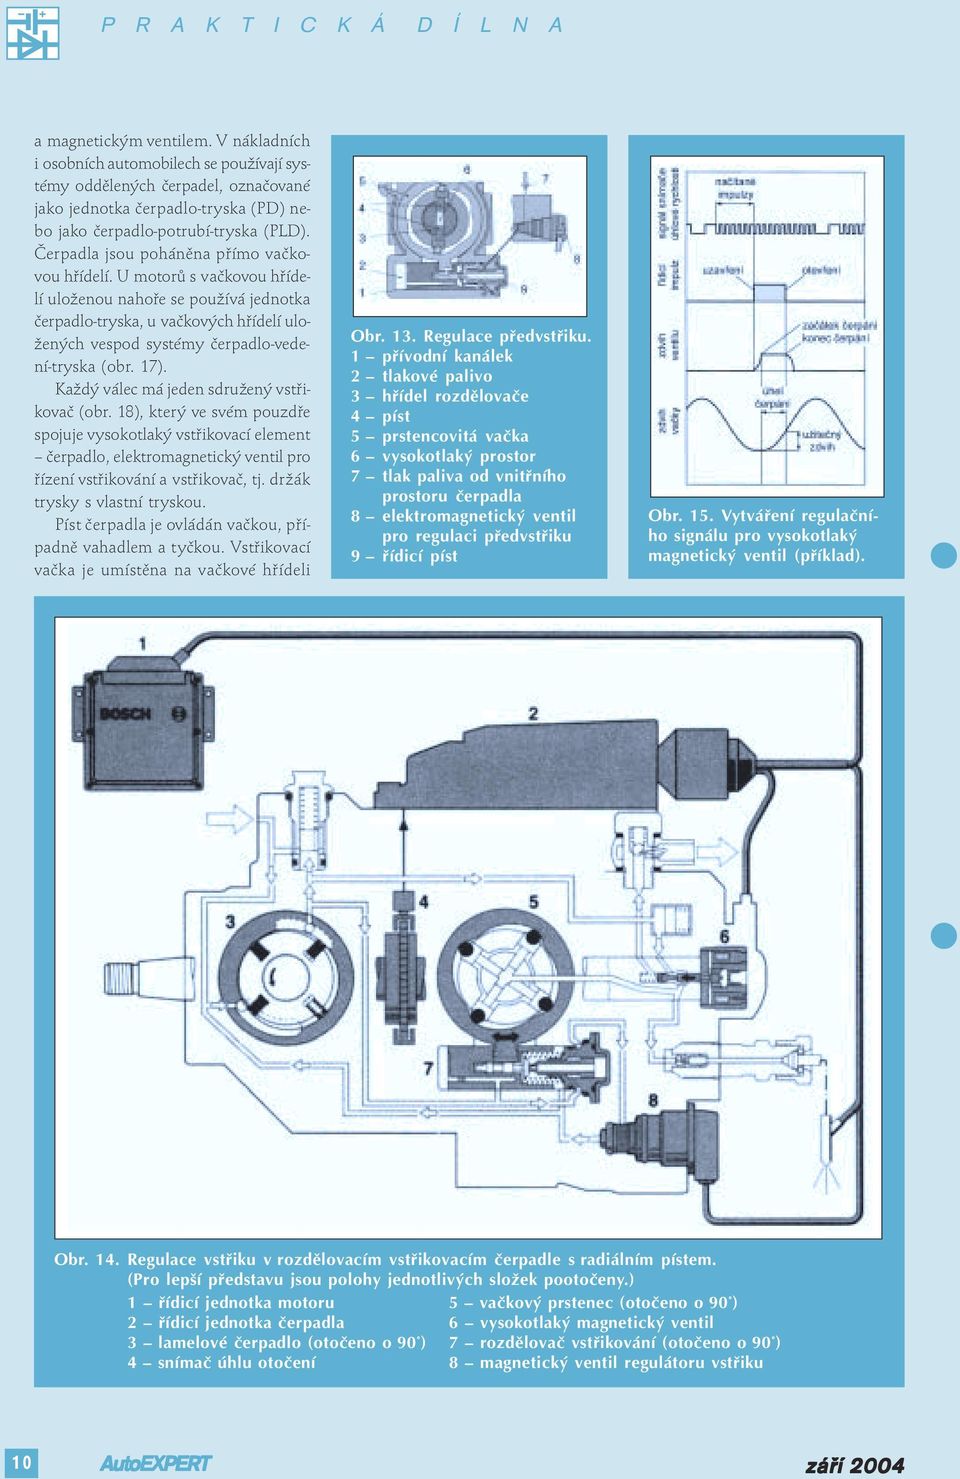 U motorů s vačkovou hřídelí uloženou nahoře se používá jednotka čerpadlo-tryska, u vačkových hřídelí uložených vespod systémy čerpadlo-vedení-tryska (obr. 17).